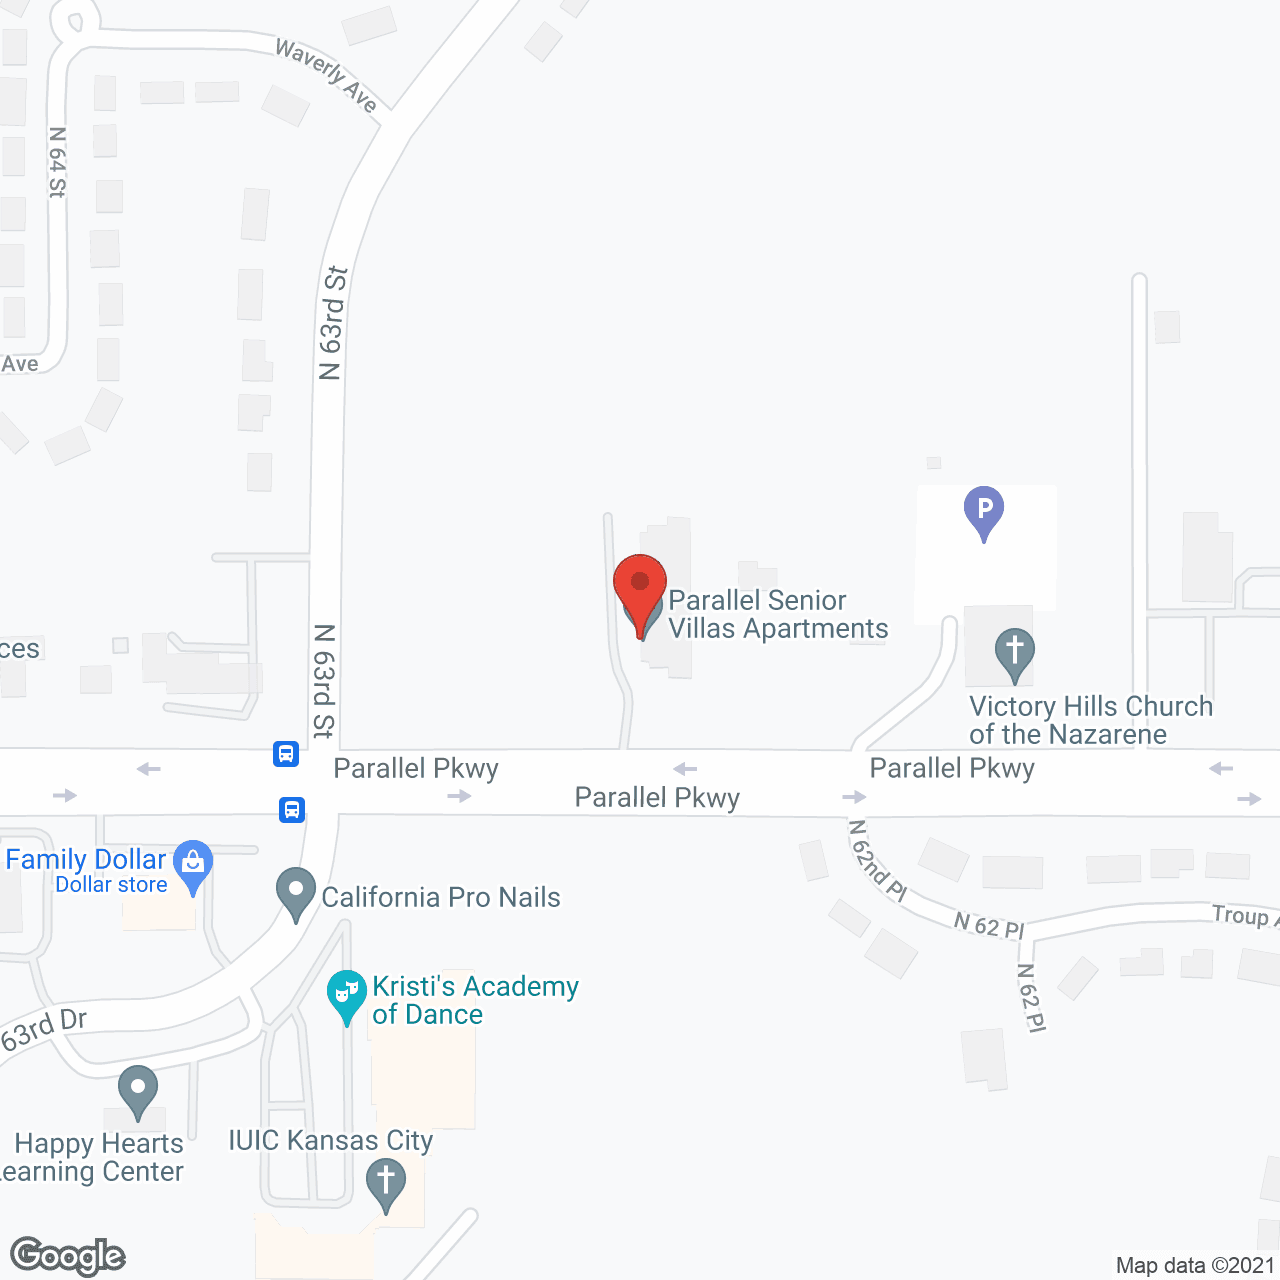 Parallel Senior Villas in google map